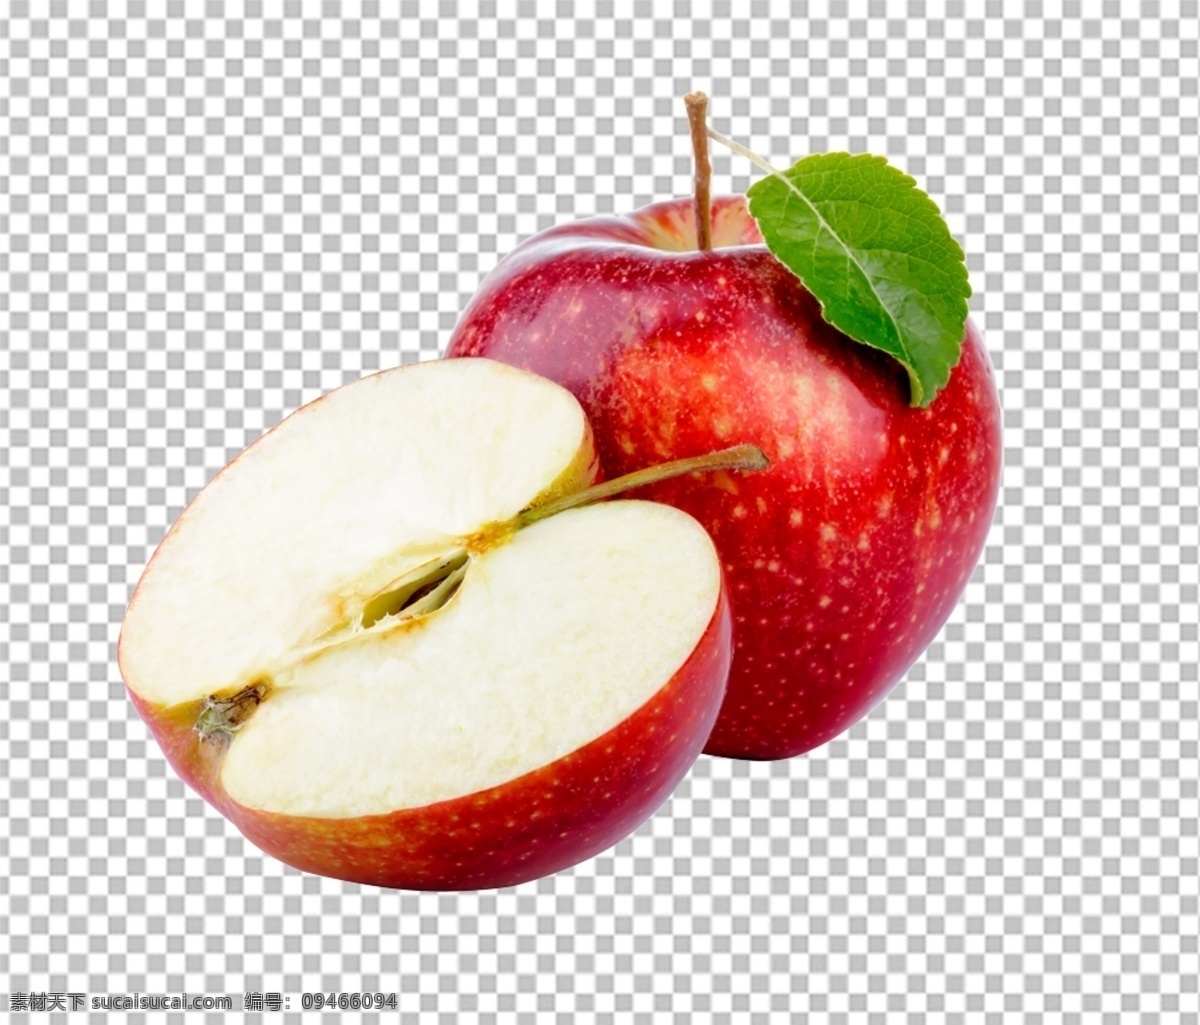 苹果图片 苹果 水果特写 水果写真 透明底水果 免抠图 水果 分层图 通道 分层 新鲜 特写 透明背景 透明底 抠图 png图 生物世界 水果透明底